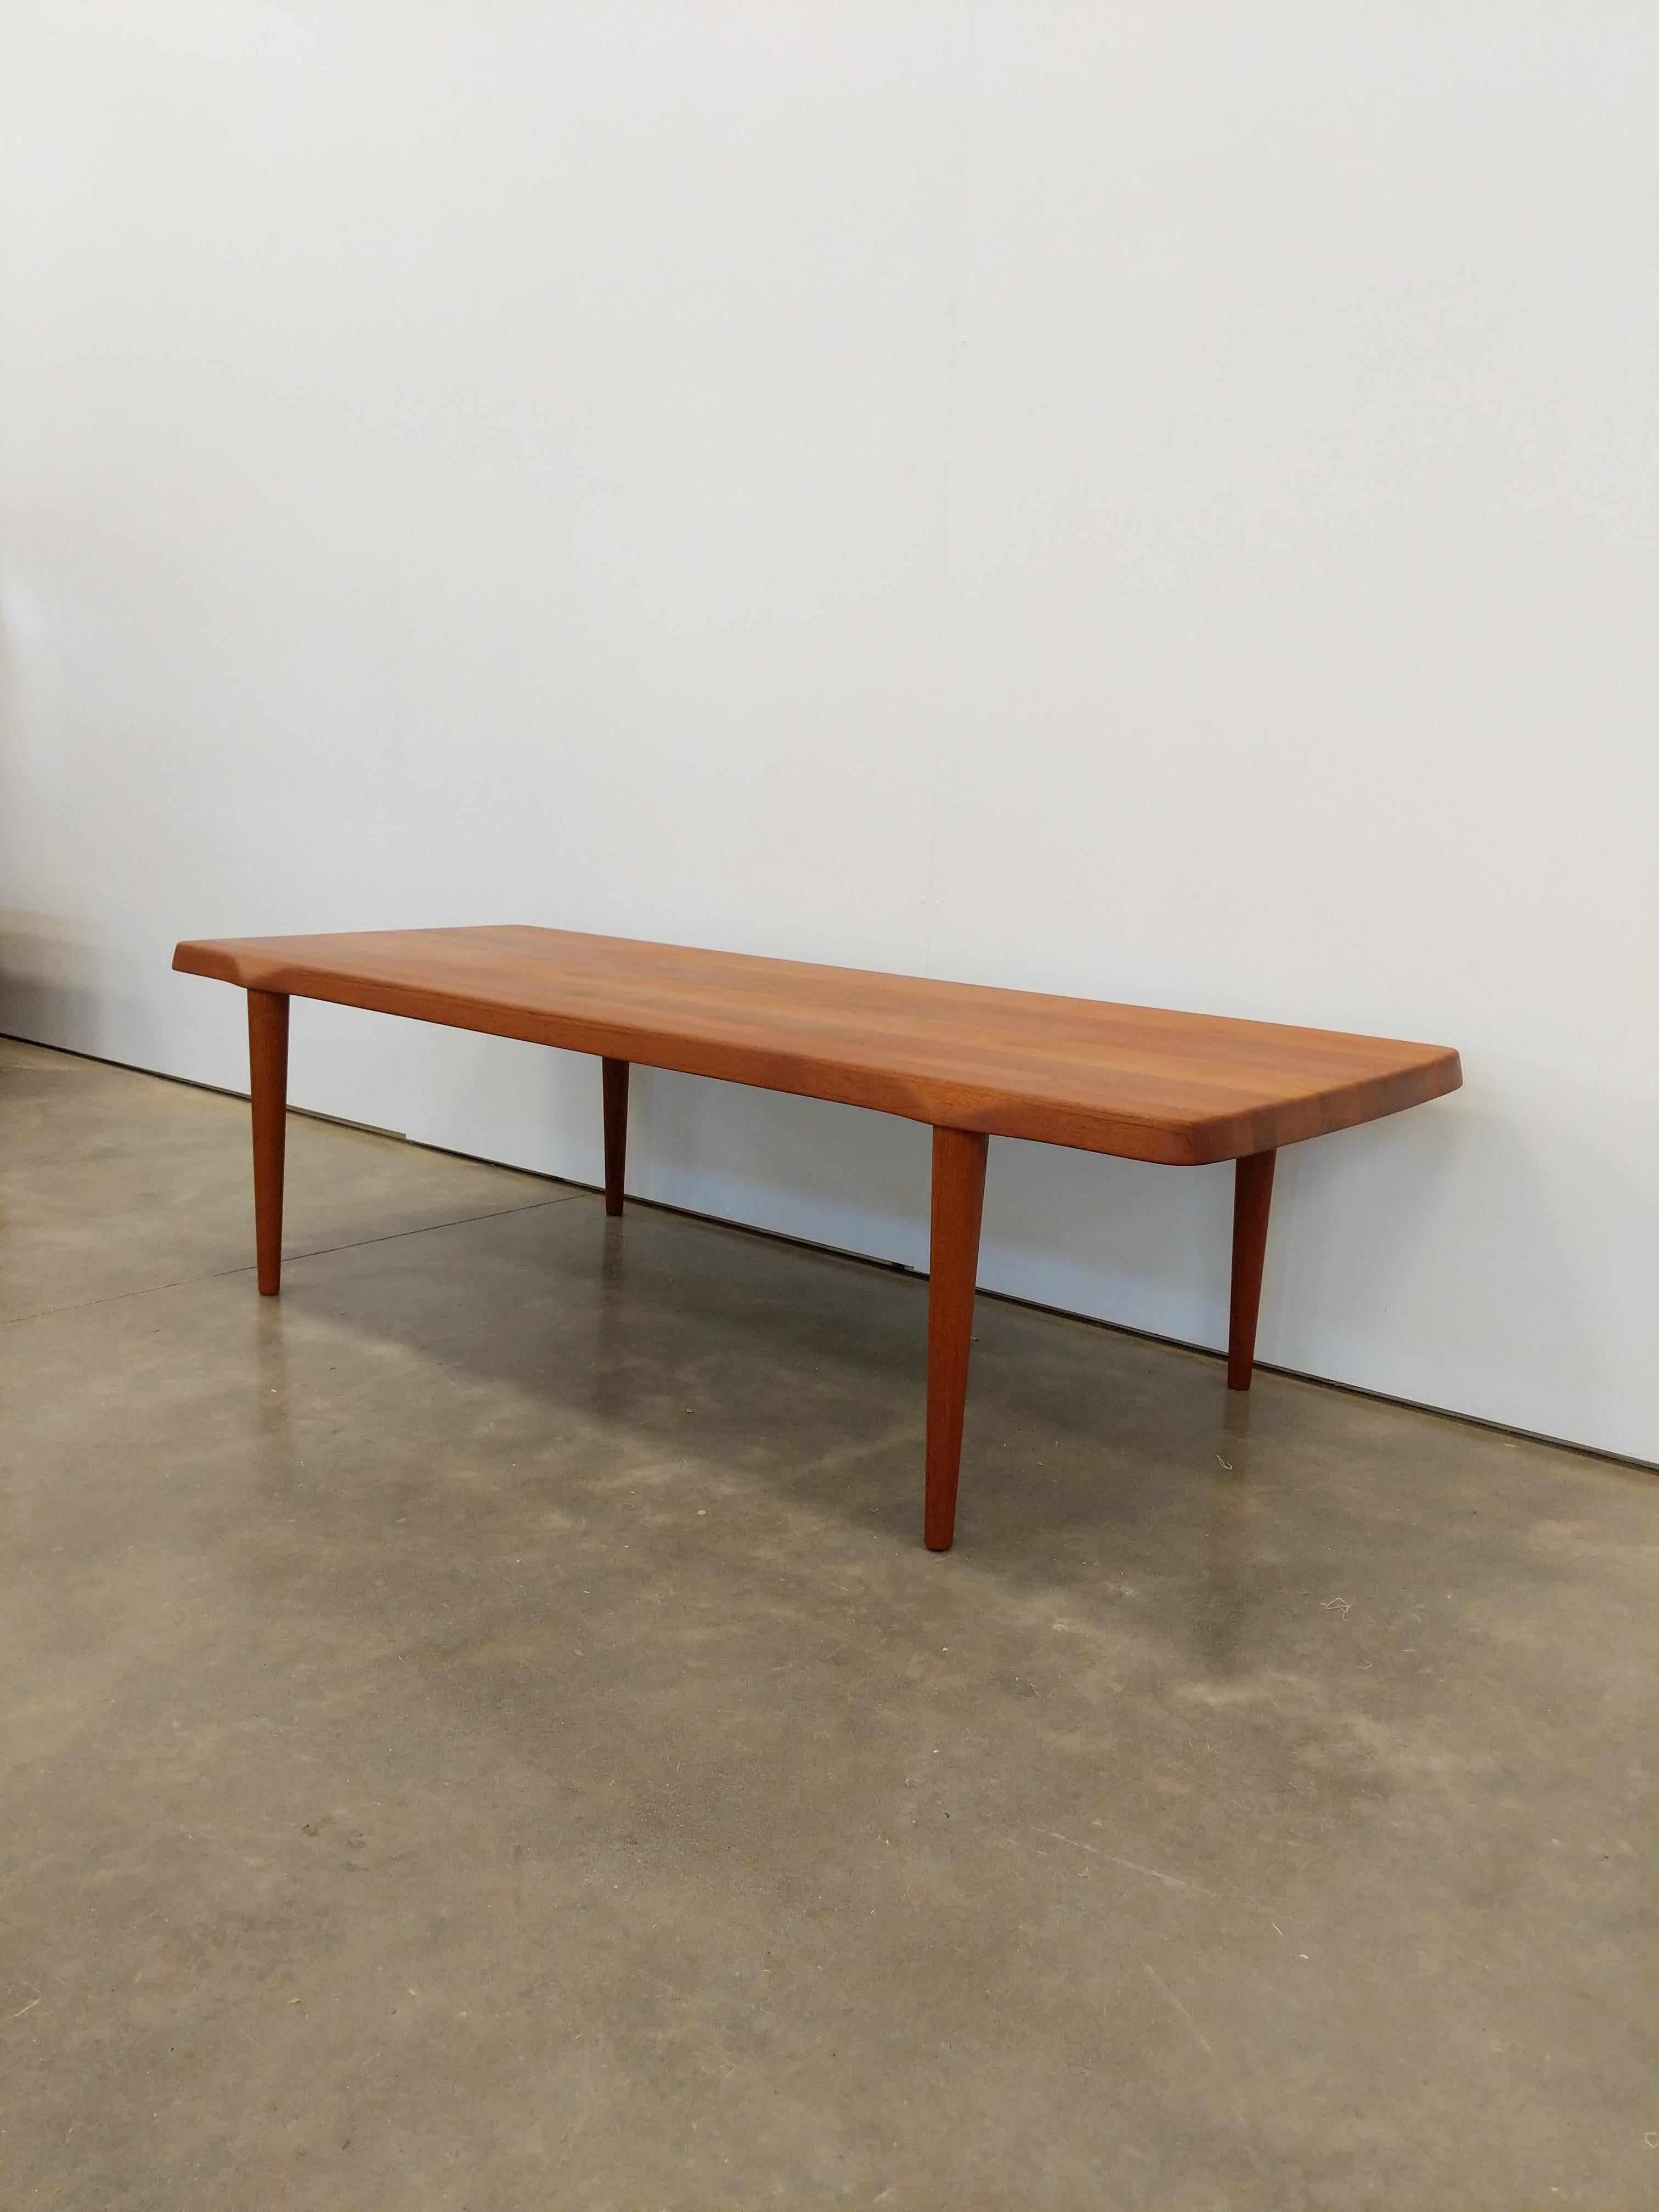 Authentique table basse en teck du milieu du siècle dernier, danoise / The Modern Scandinavian.

Cette table est en teck massif.

Cette pièce est en excellent état de finition avec très peu de signes d'usure liés à l'âge (voir photos).

Si vous